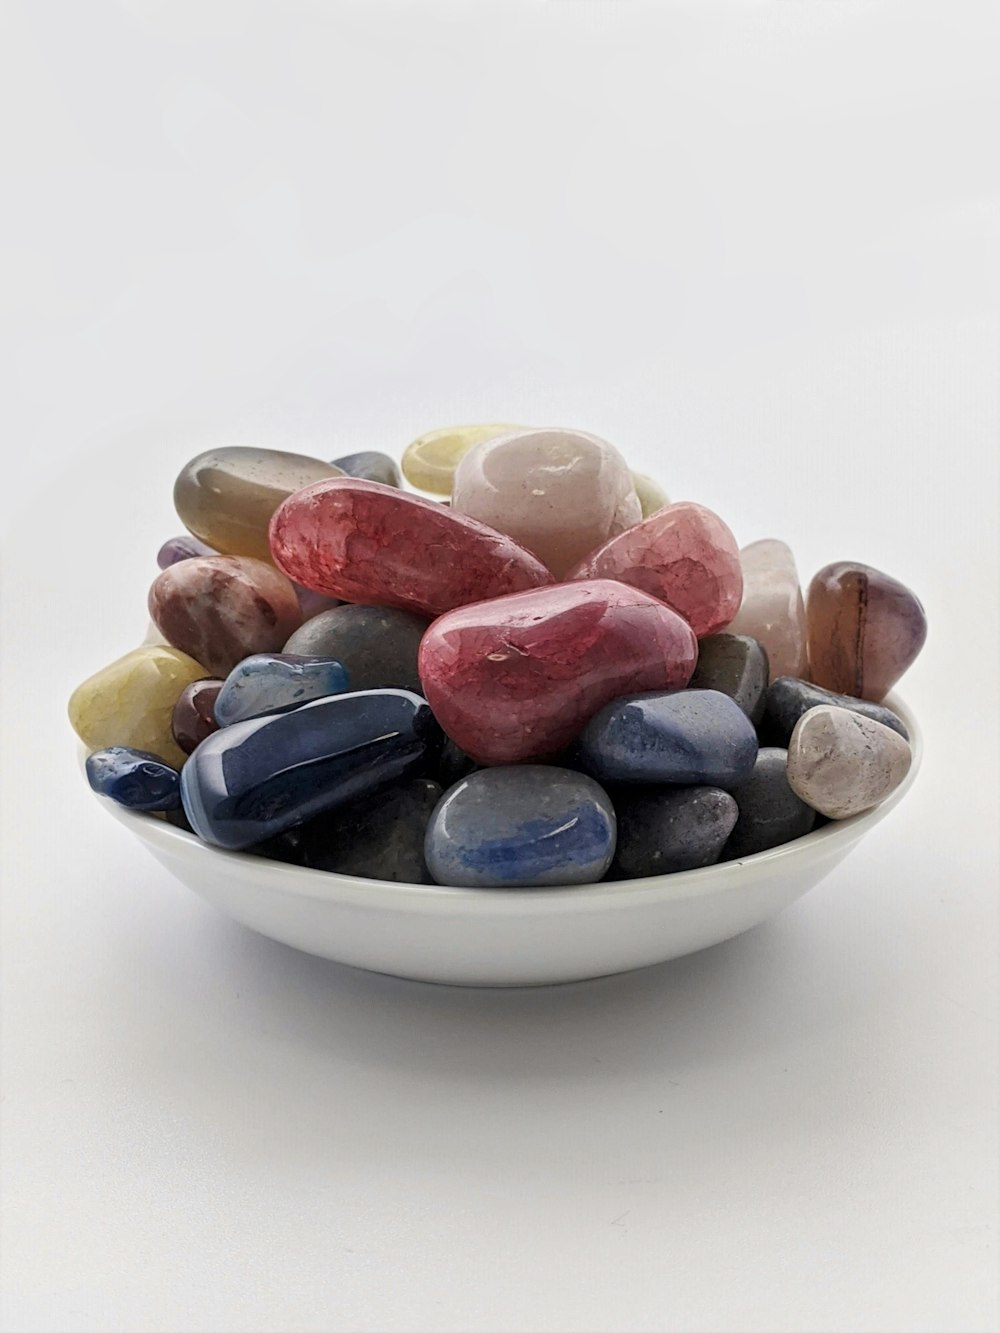 Cuenco de cerámica blanca, azul y marrón con piedras marrones y beige